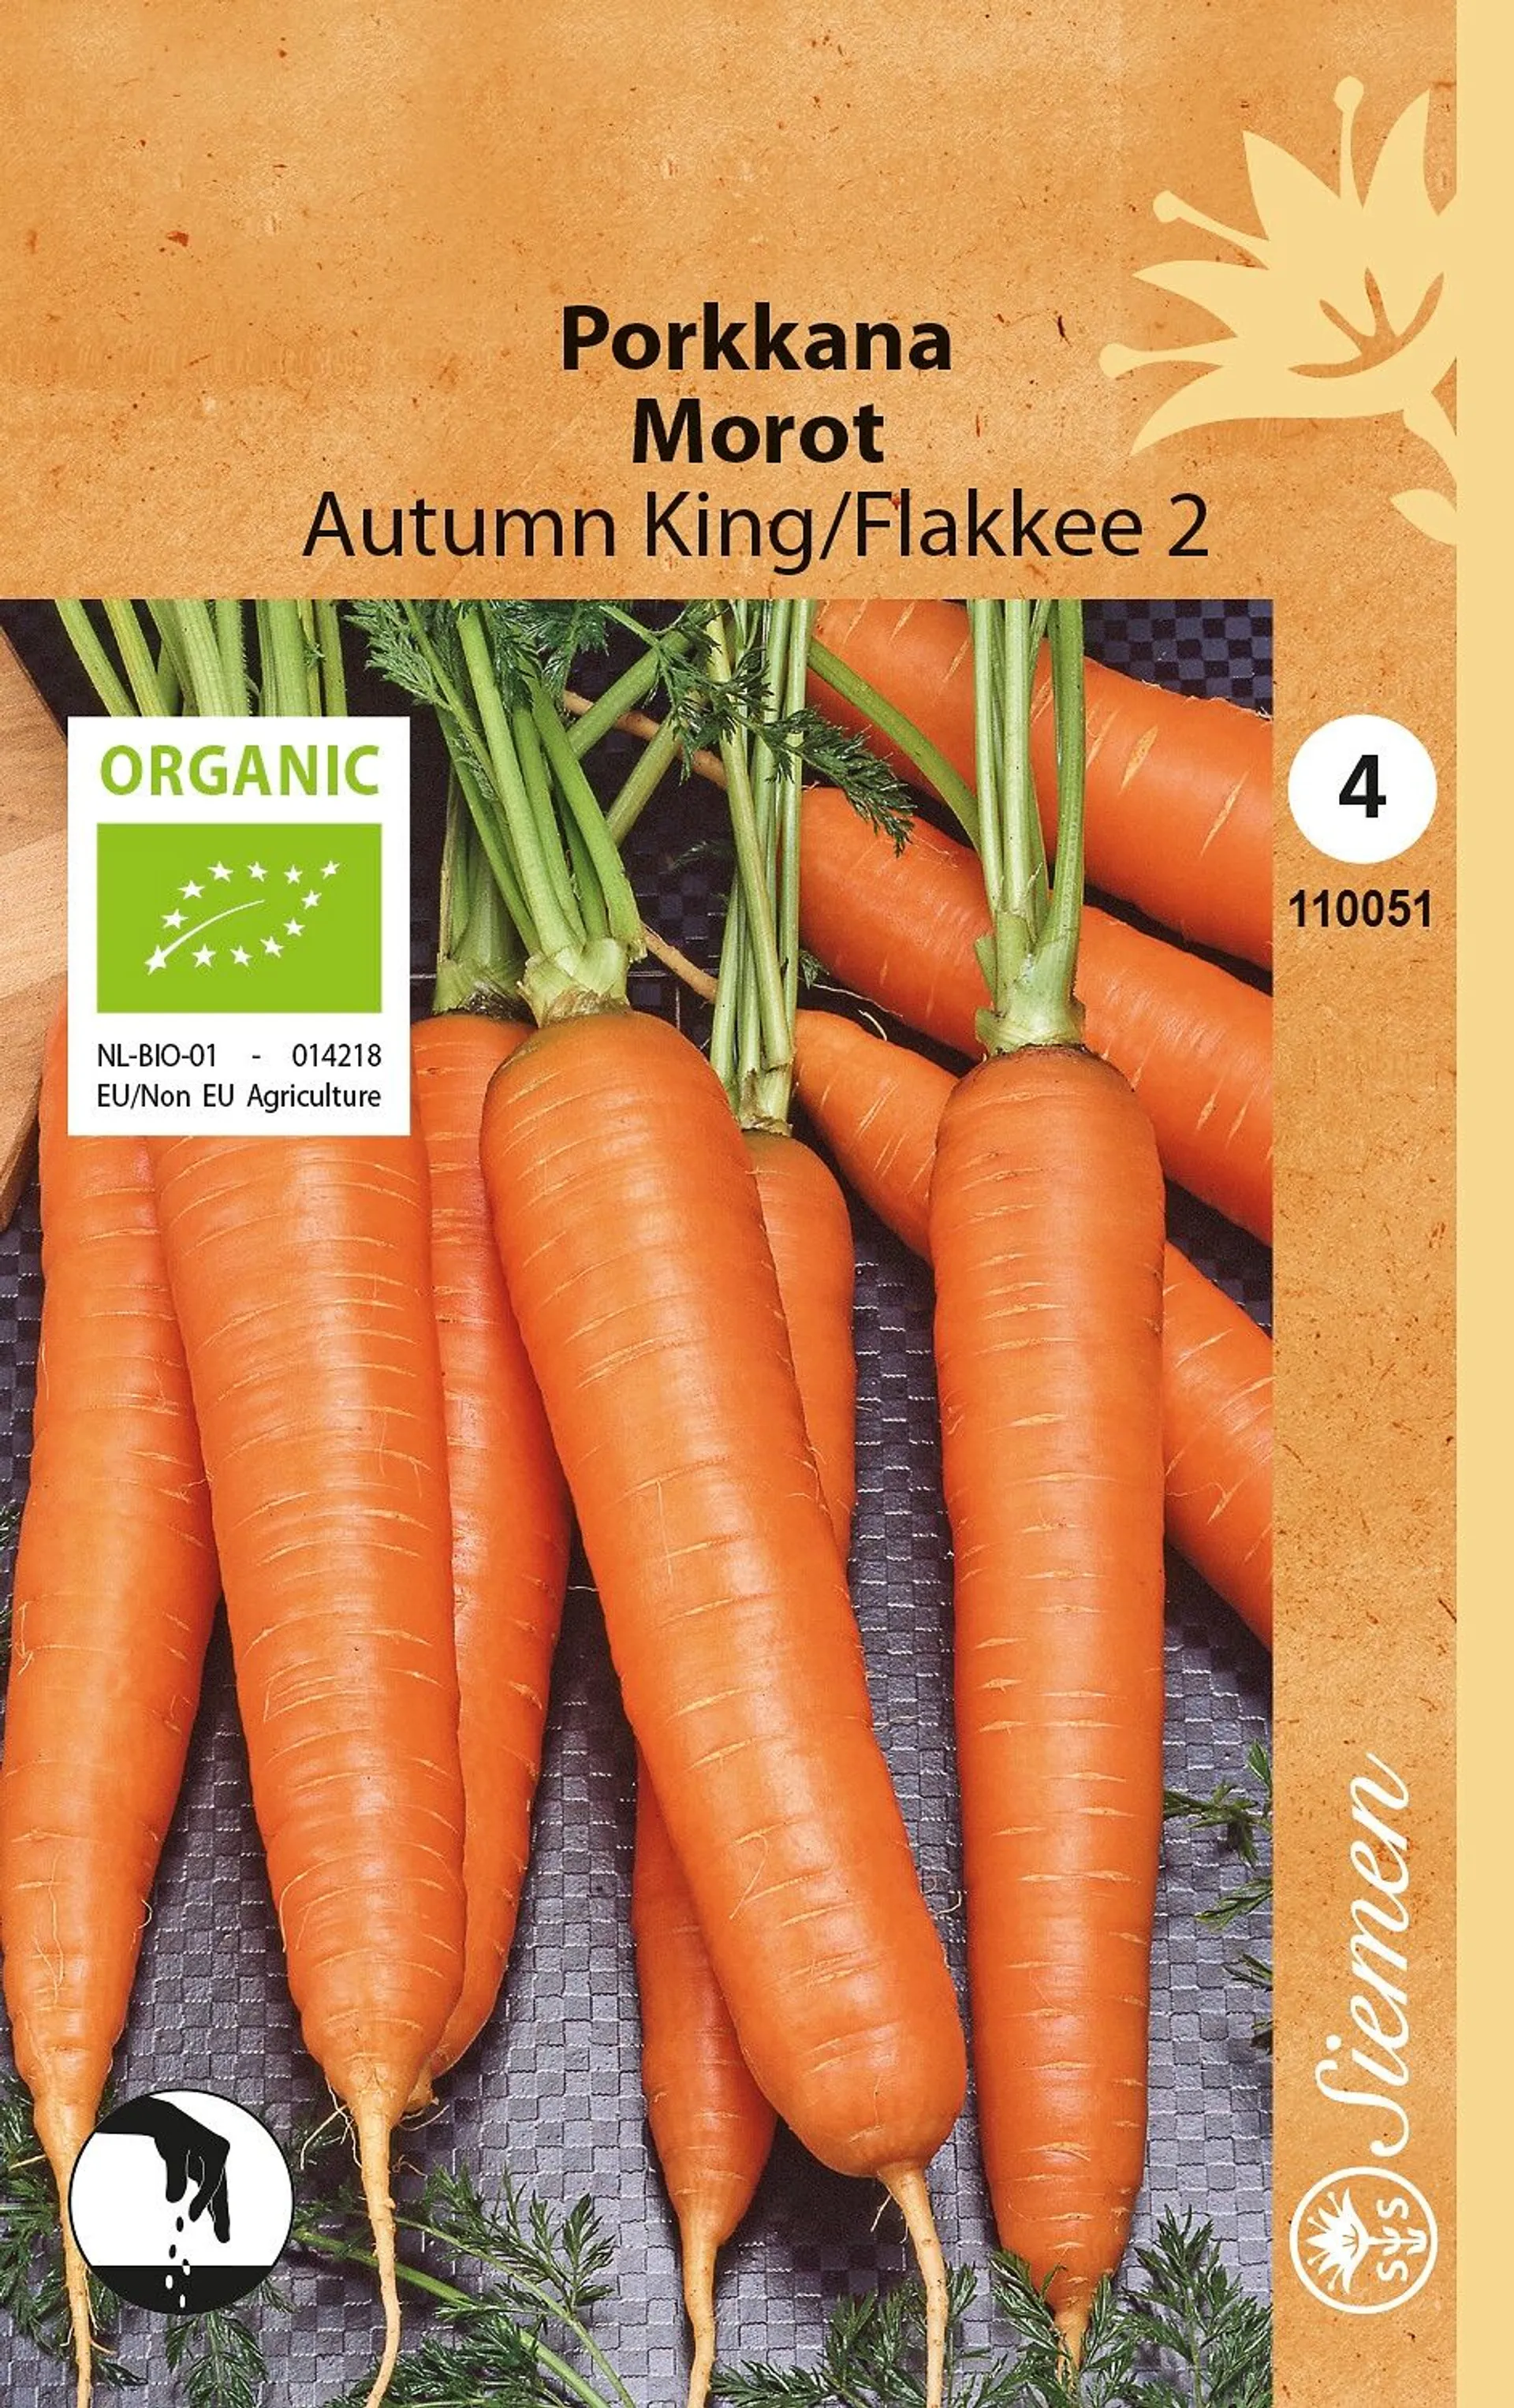 Siemen luomu porkkana Autumn King/Flakkee 2